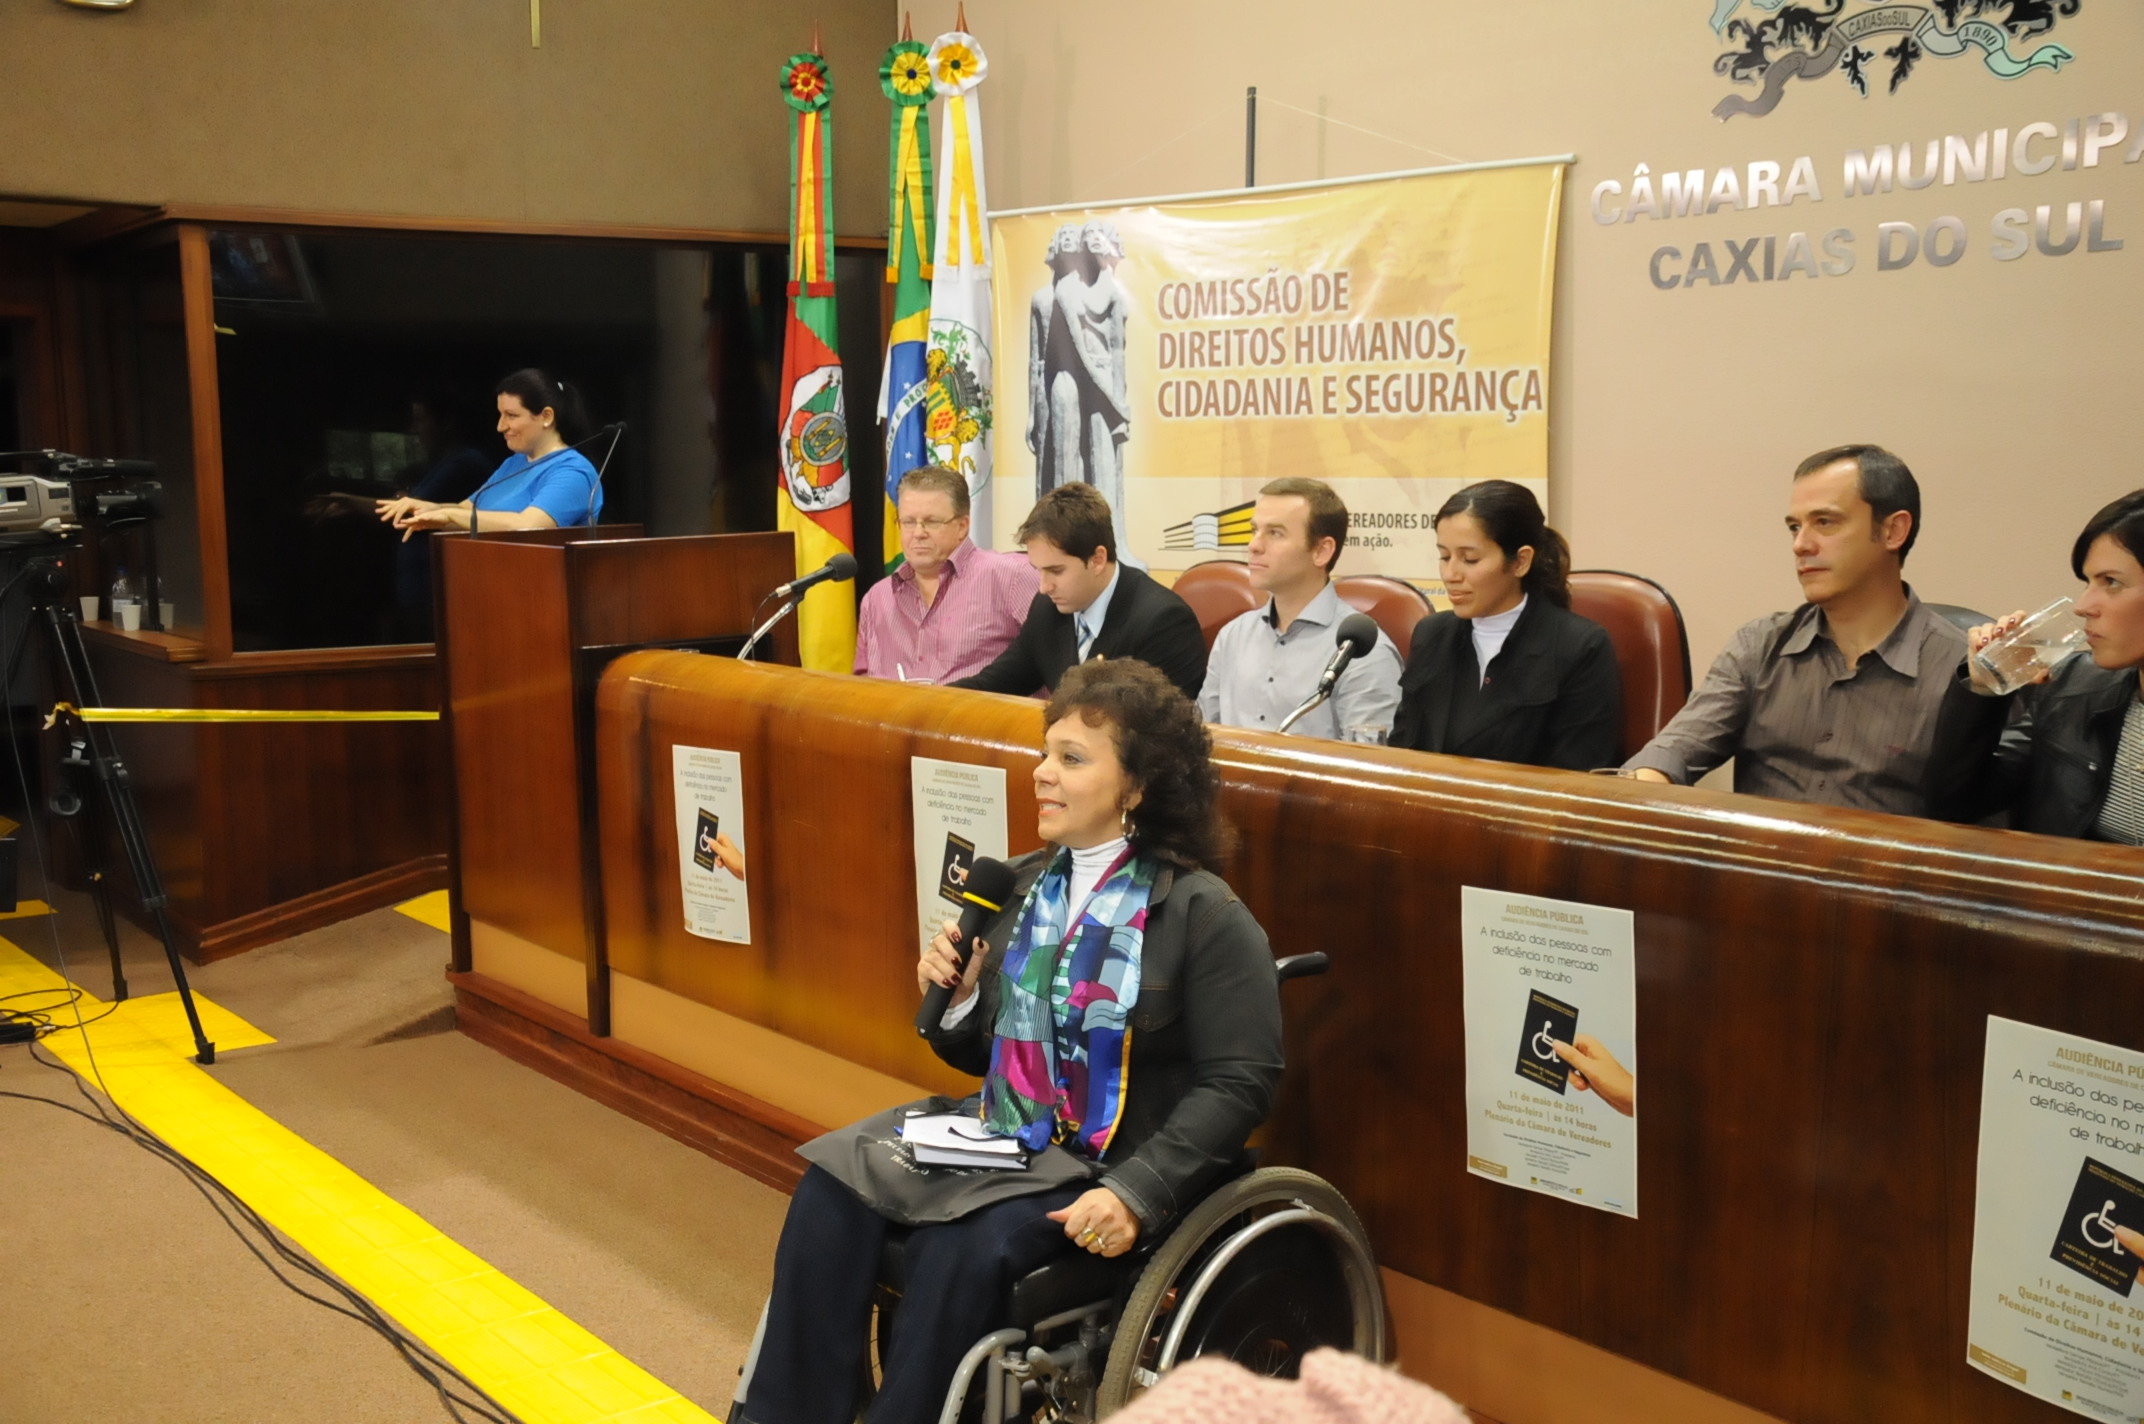 Comissão de Direitos Humanos propõe comitê para a inclusão de pessoas com deficiência